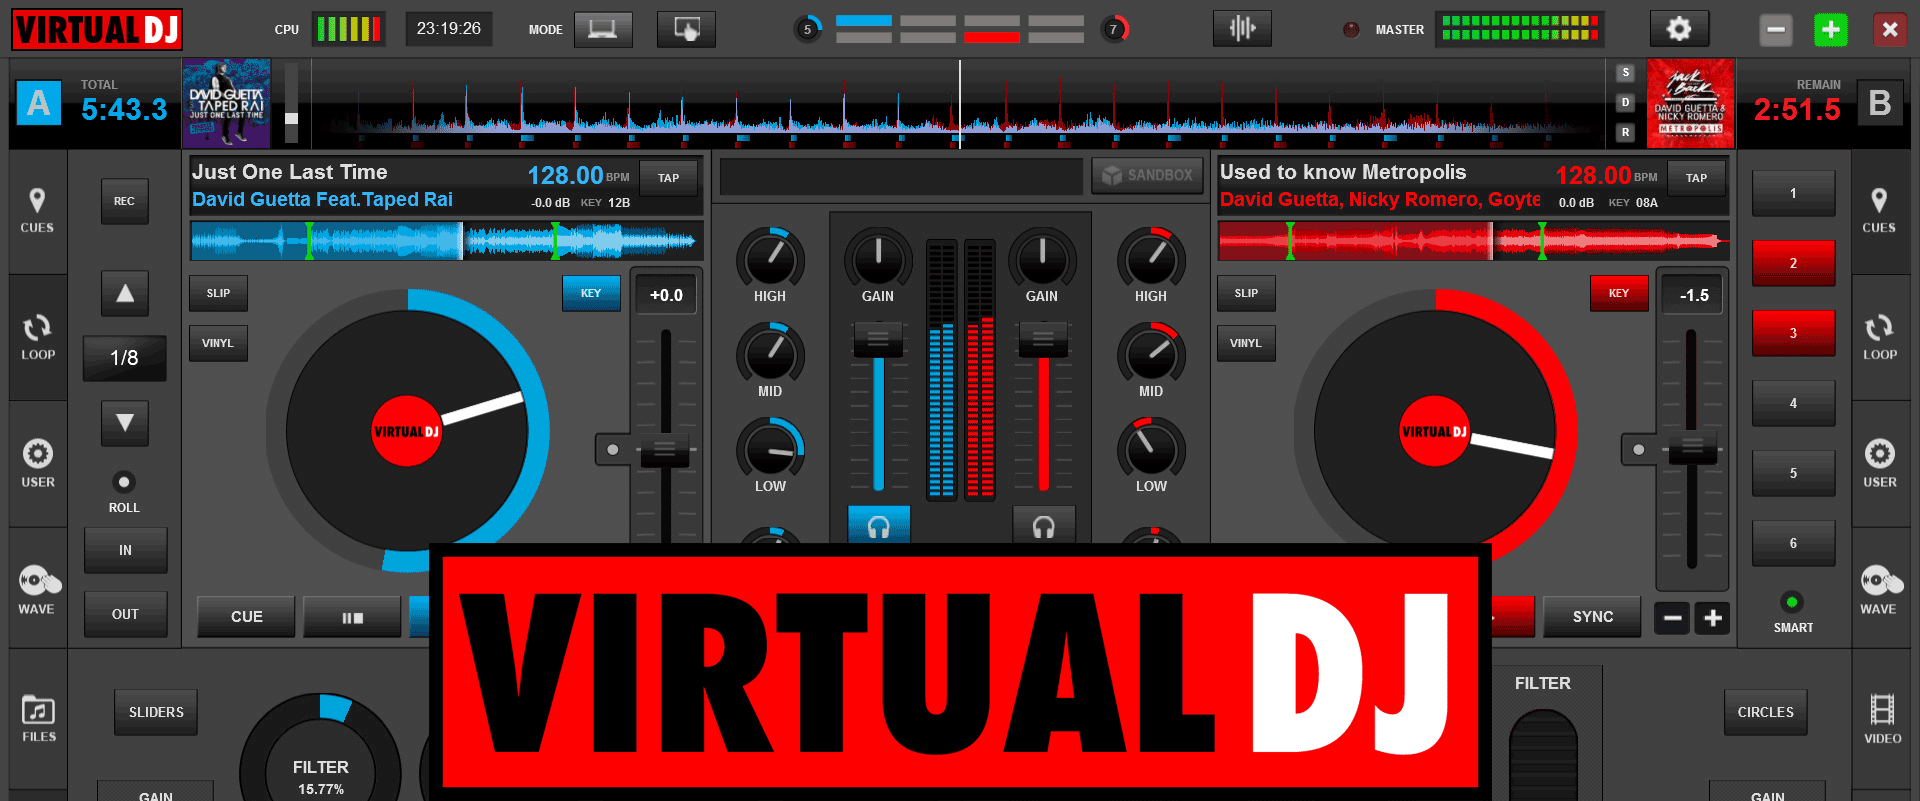 download virtual dj 5.0 7 full crack